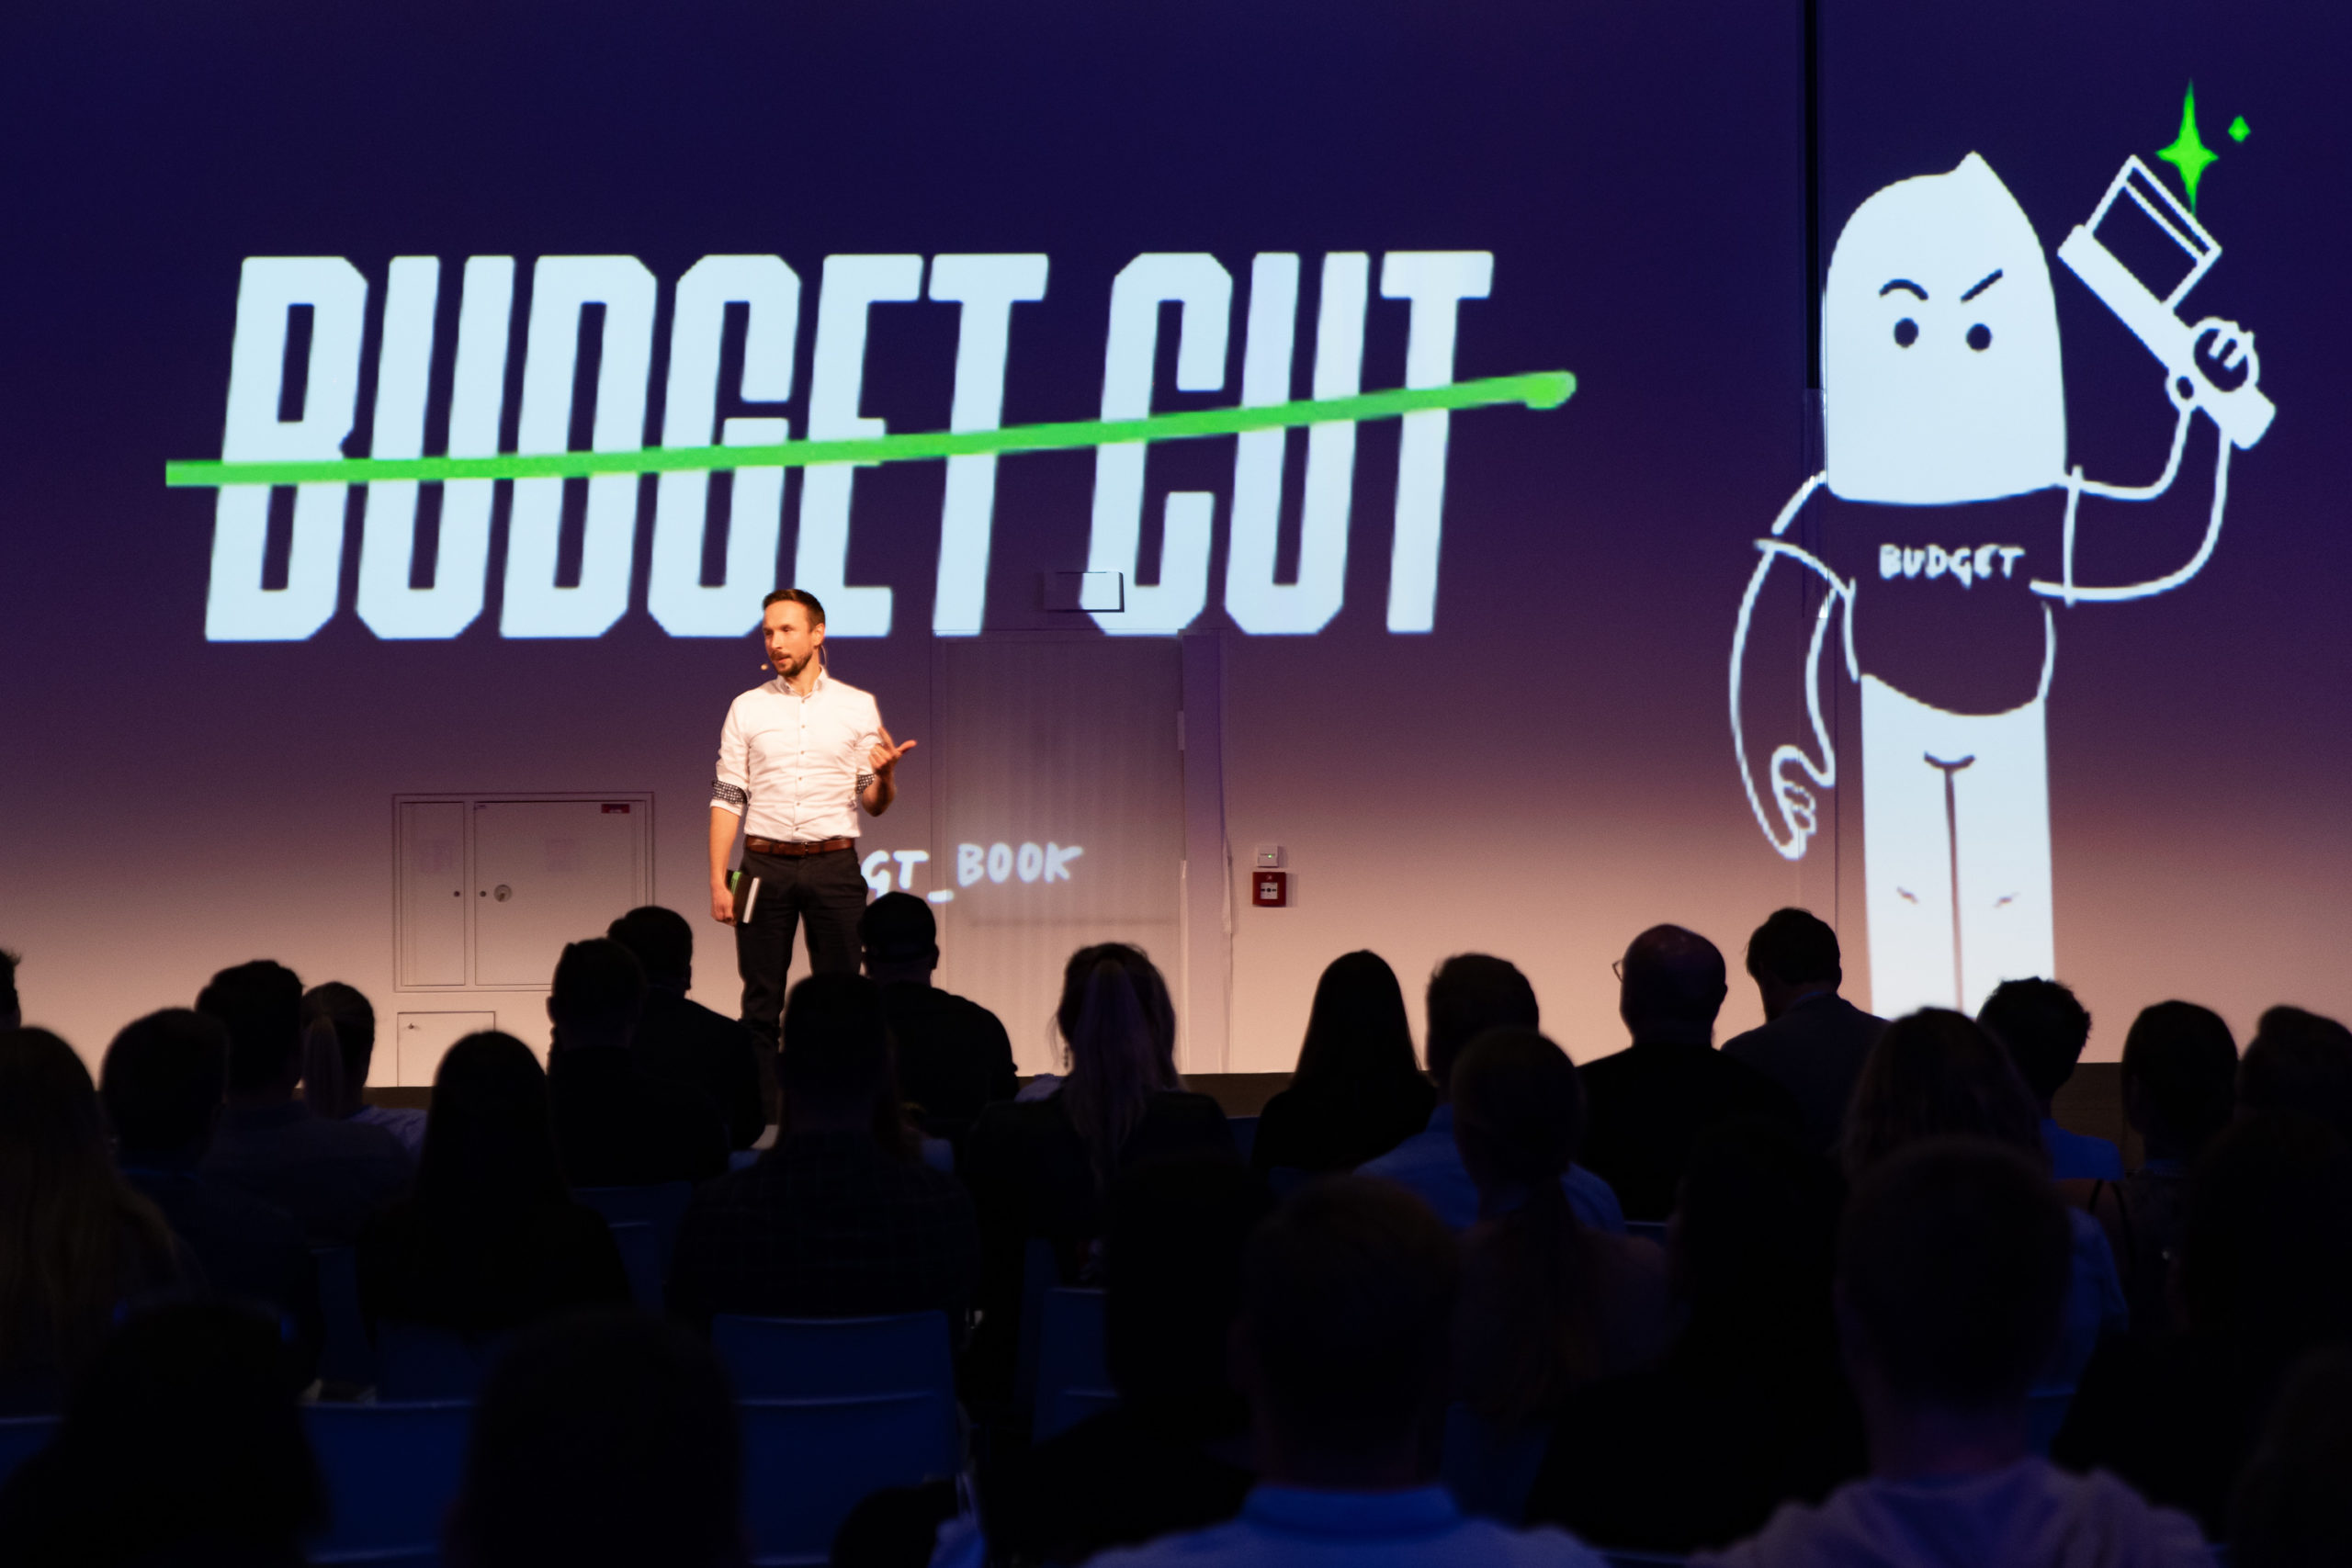 Budget Cut - Brand Management